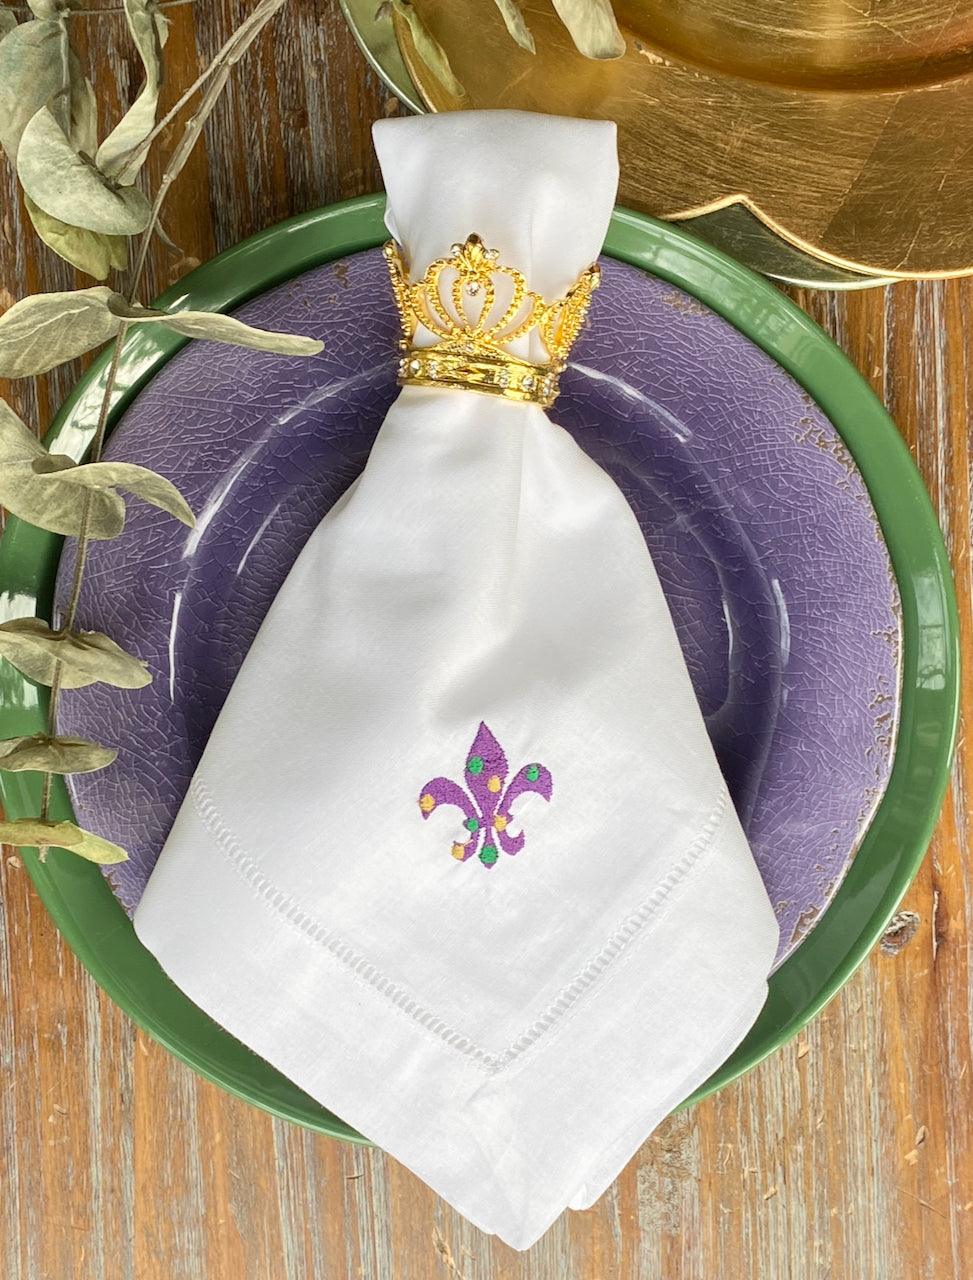 https://whitetulipembroidery.com/cdn/shop/products/mardi-gras-fleur-de-lis-cloth-napkins-set-of-4-napkins-white-tulip-embroidery-1.jpg?v=1676306791